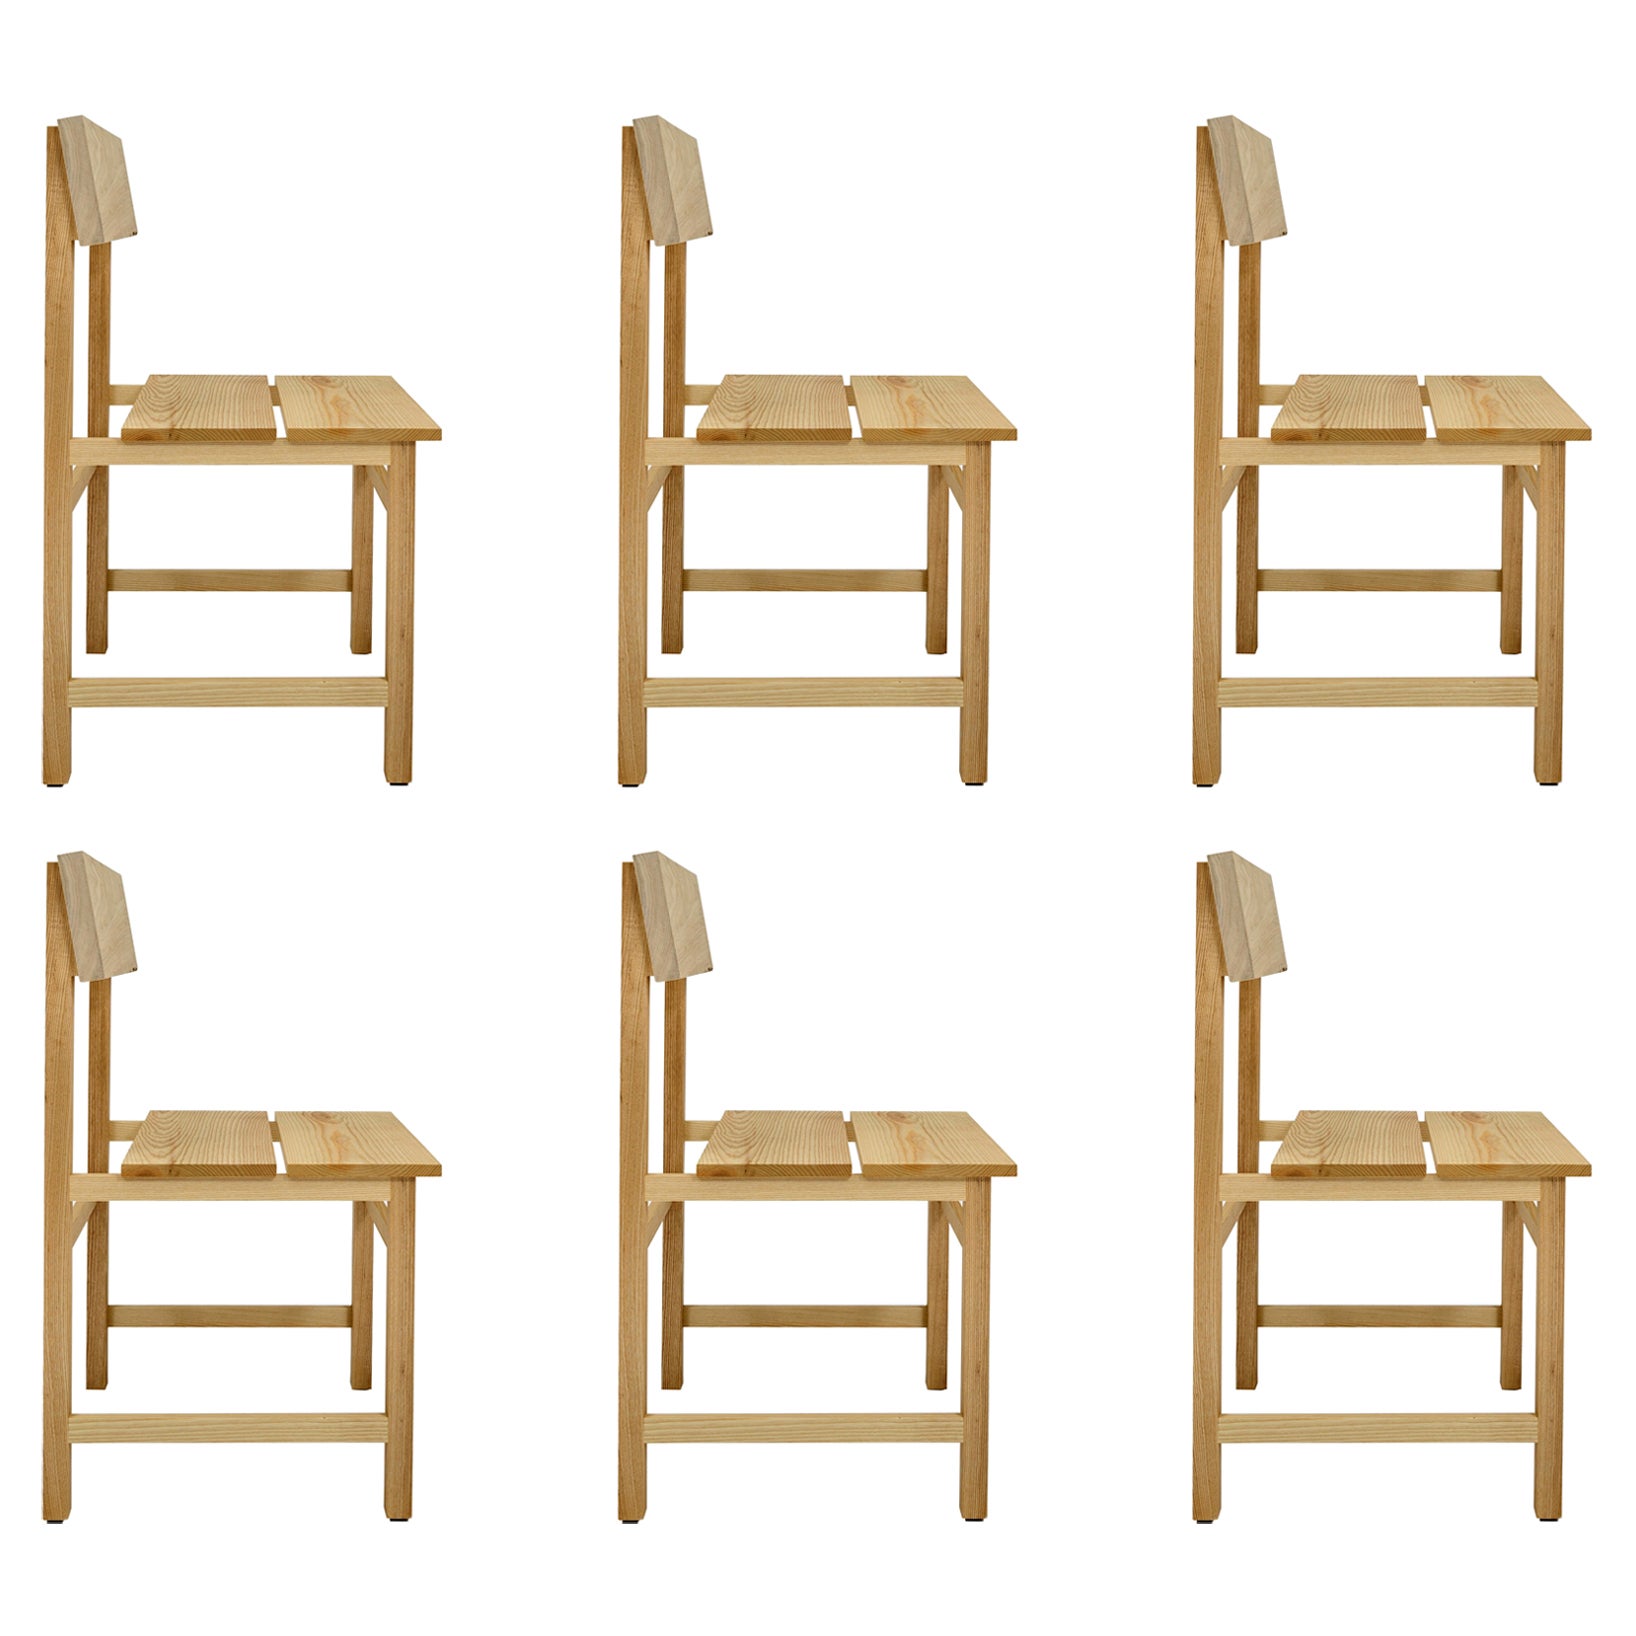 Prairie Chair, Modern Ash Wood Dining Chair, Set of 6